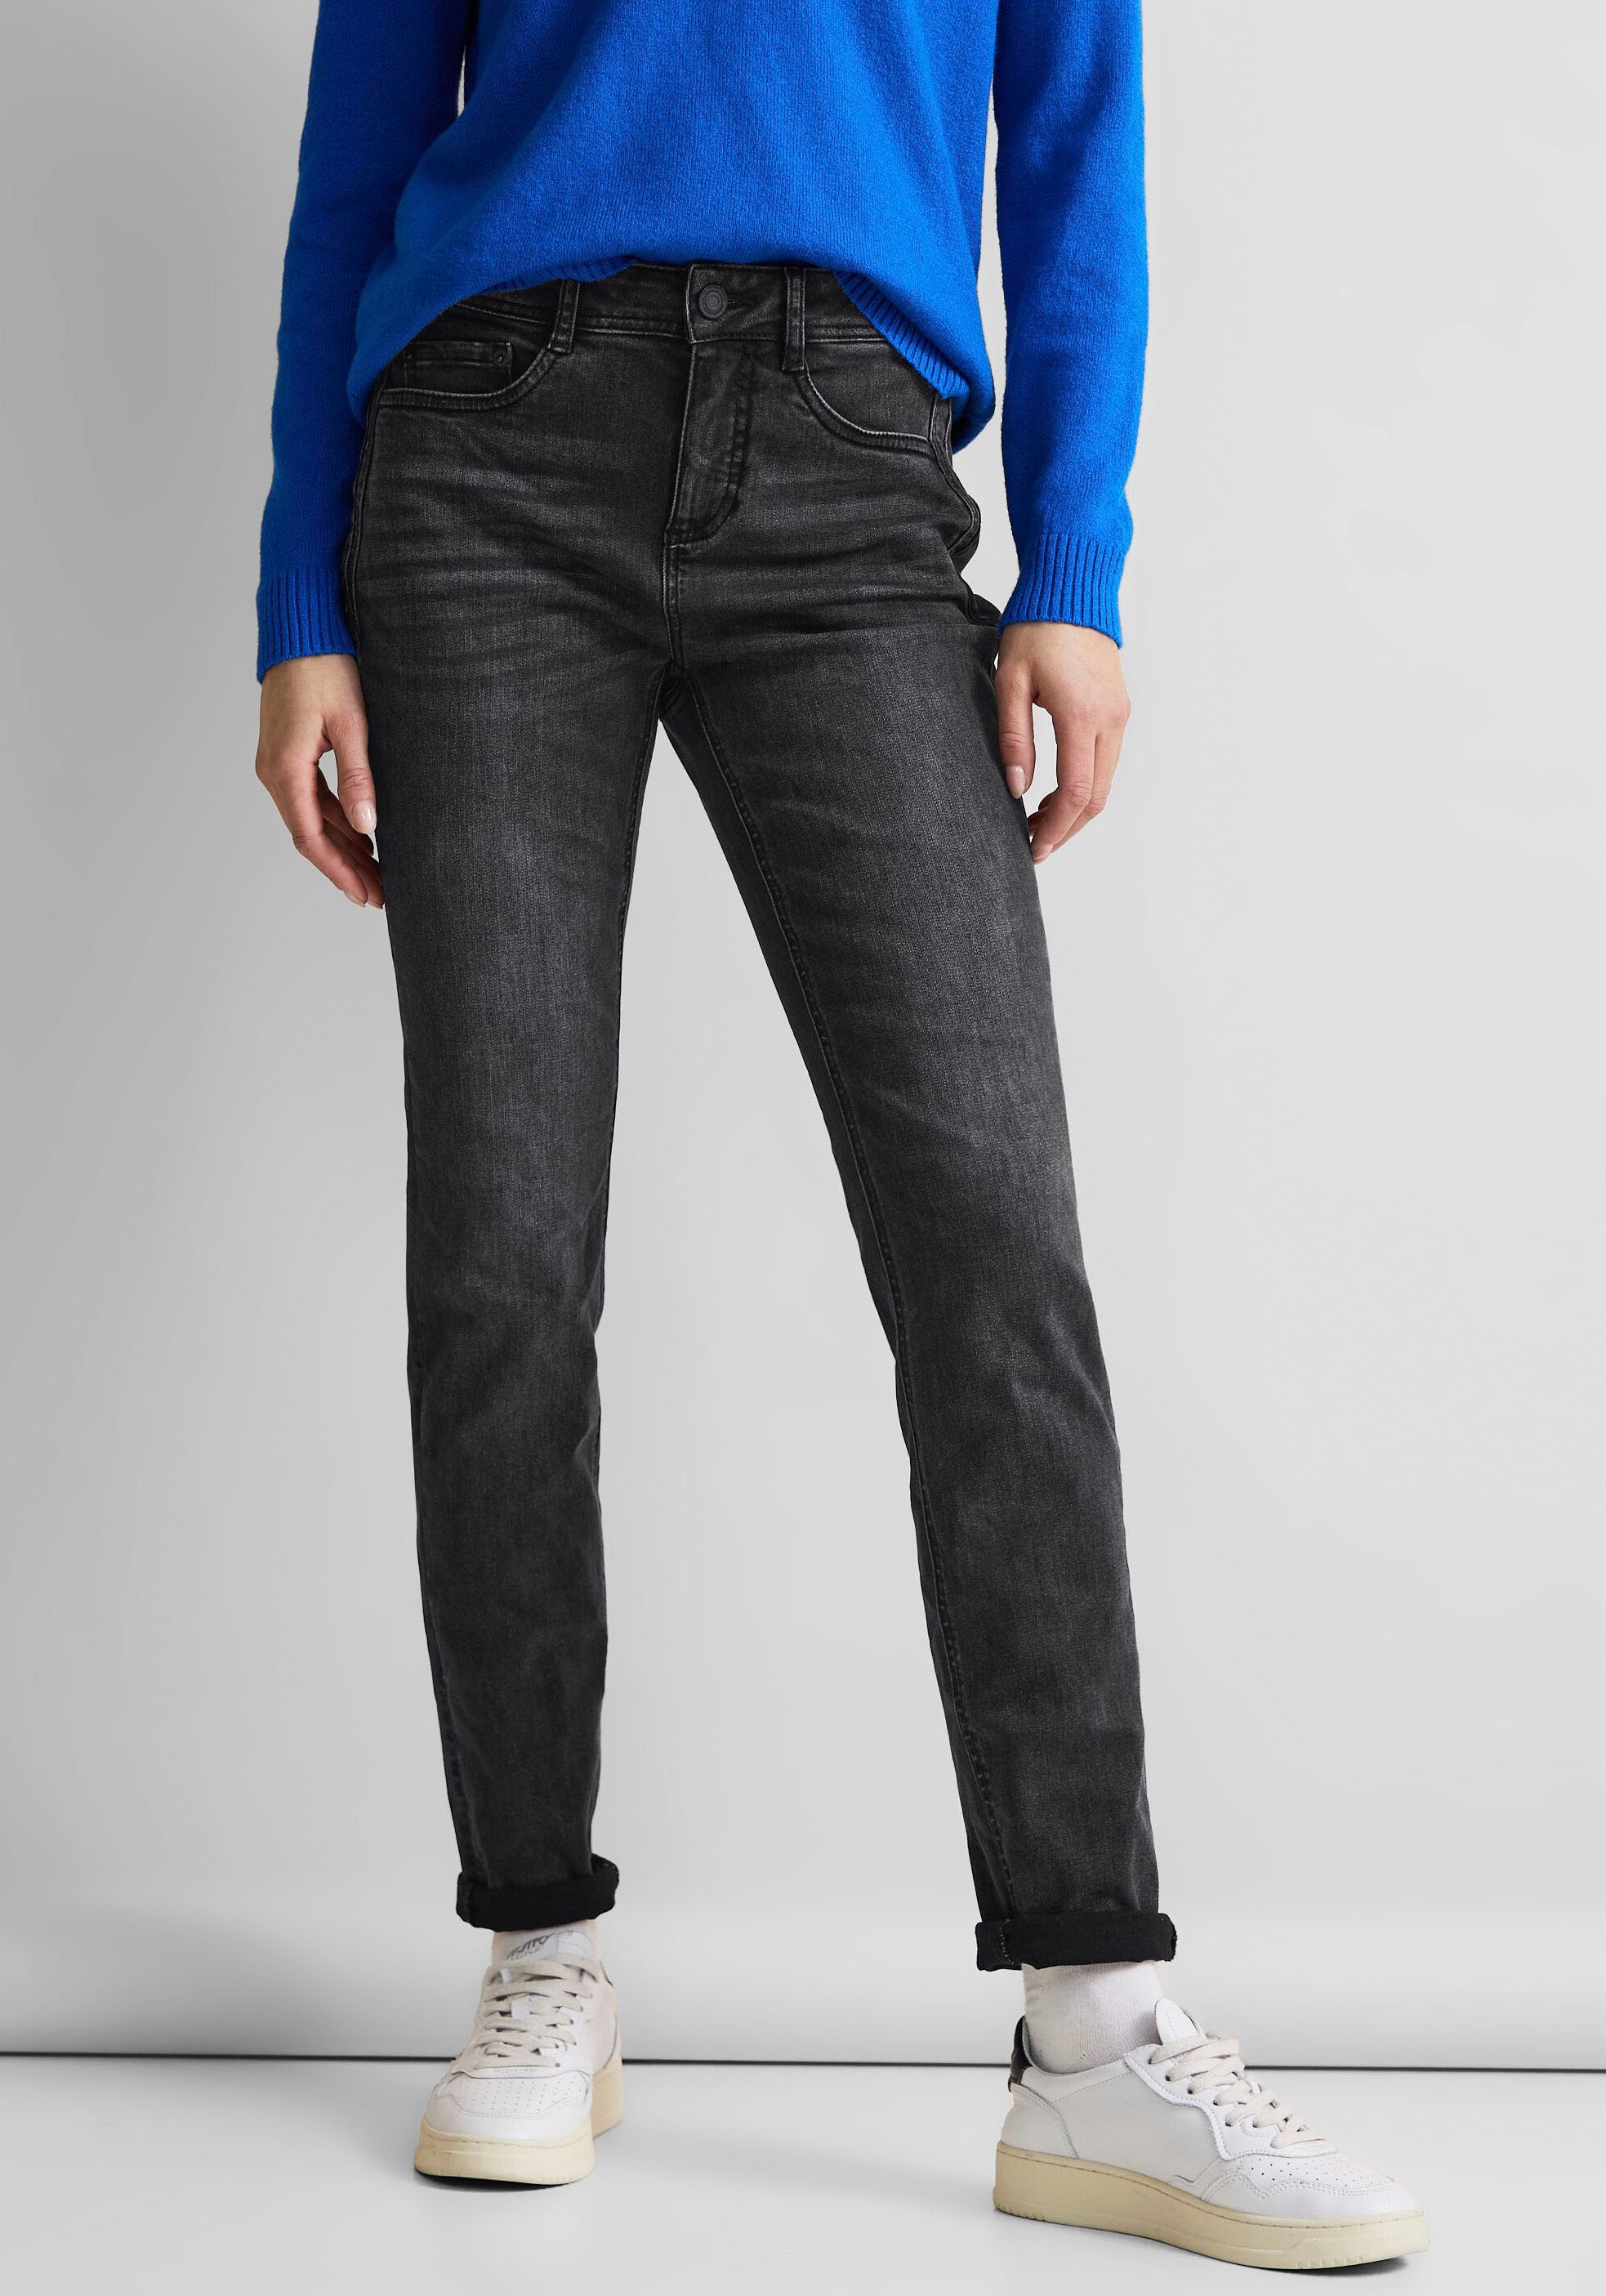 STREET ONE BAUR im | Fünf-Pocket-Stil Slim-fit-Jeans, kaufen für